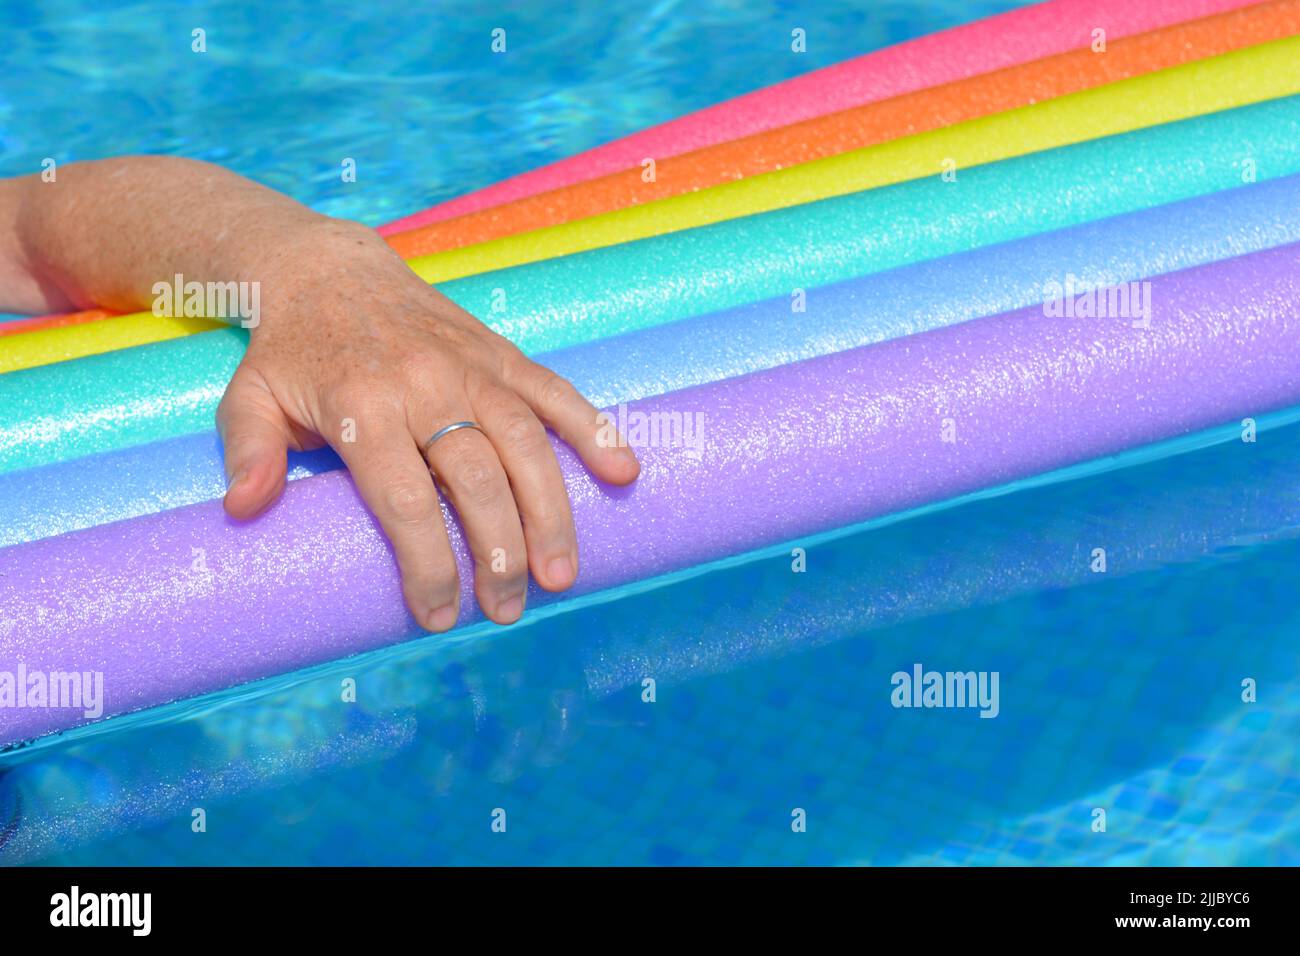 Brazo de mujer descansando sobre fideos de natación de color arco iris flotando en la piscina Foto de stock